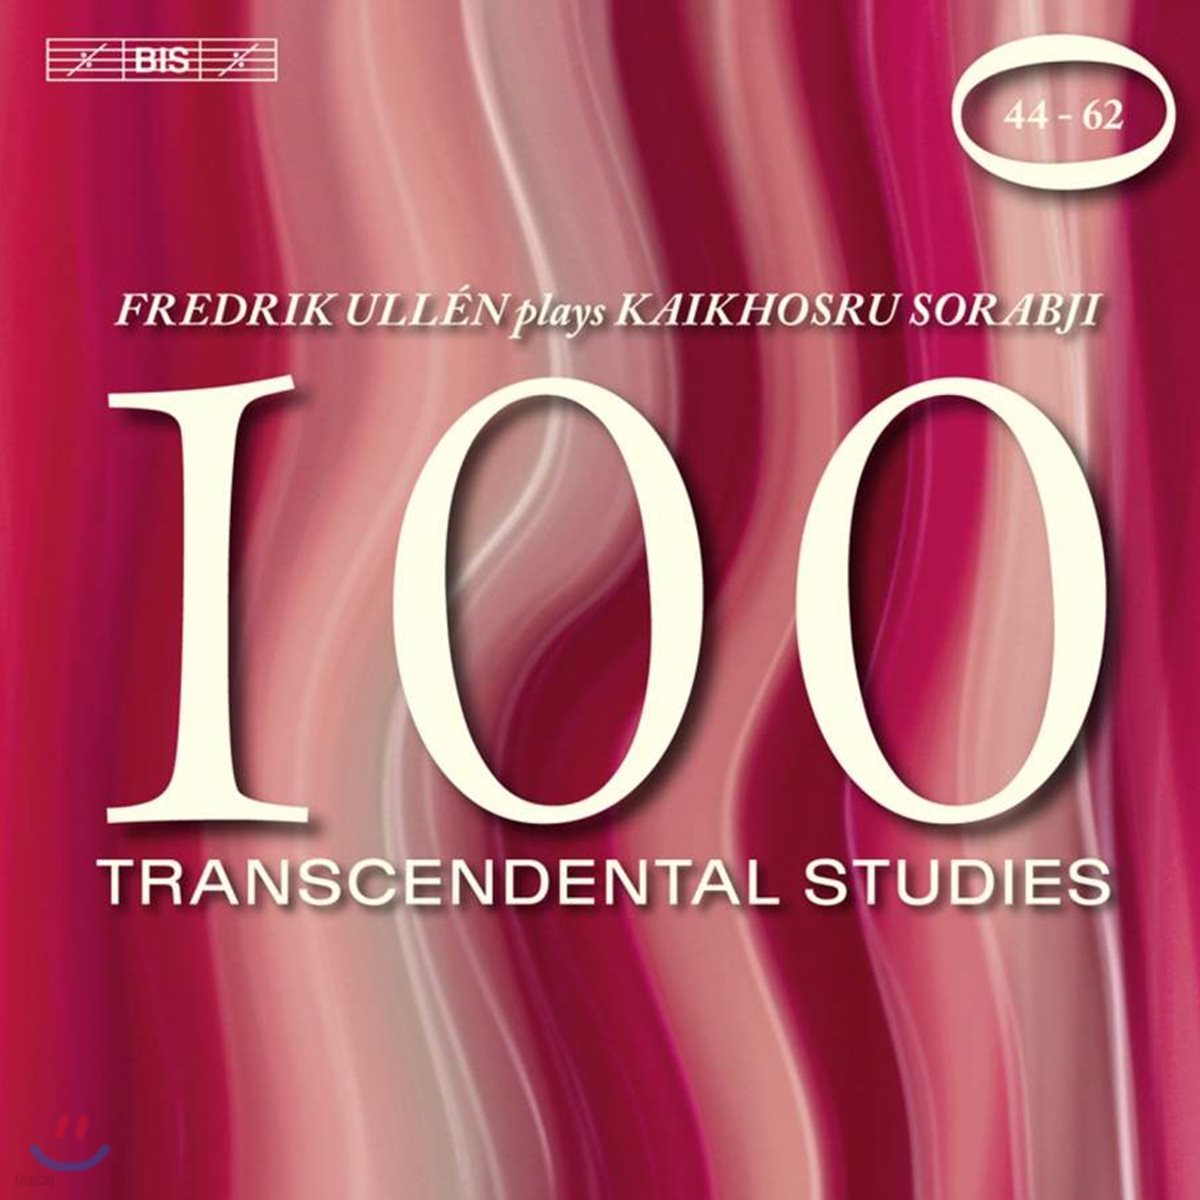 Fredrik Ullen 카이코스루 소랍지: 100 초절기교 연습곡 3집 - 44~62번 (Kaikhosru Sorabji: 100 Transcendental Studies)